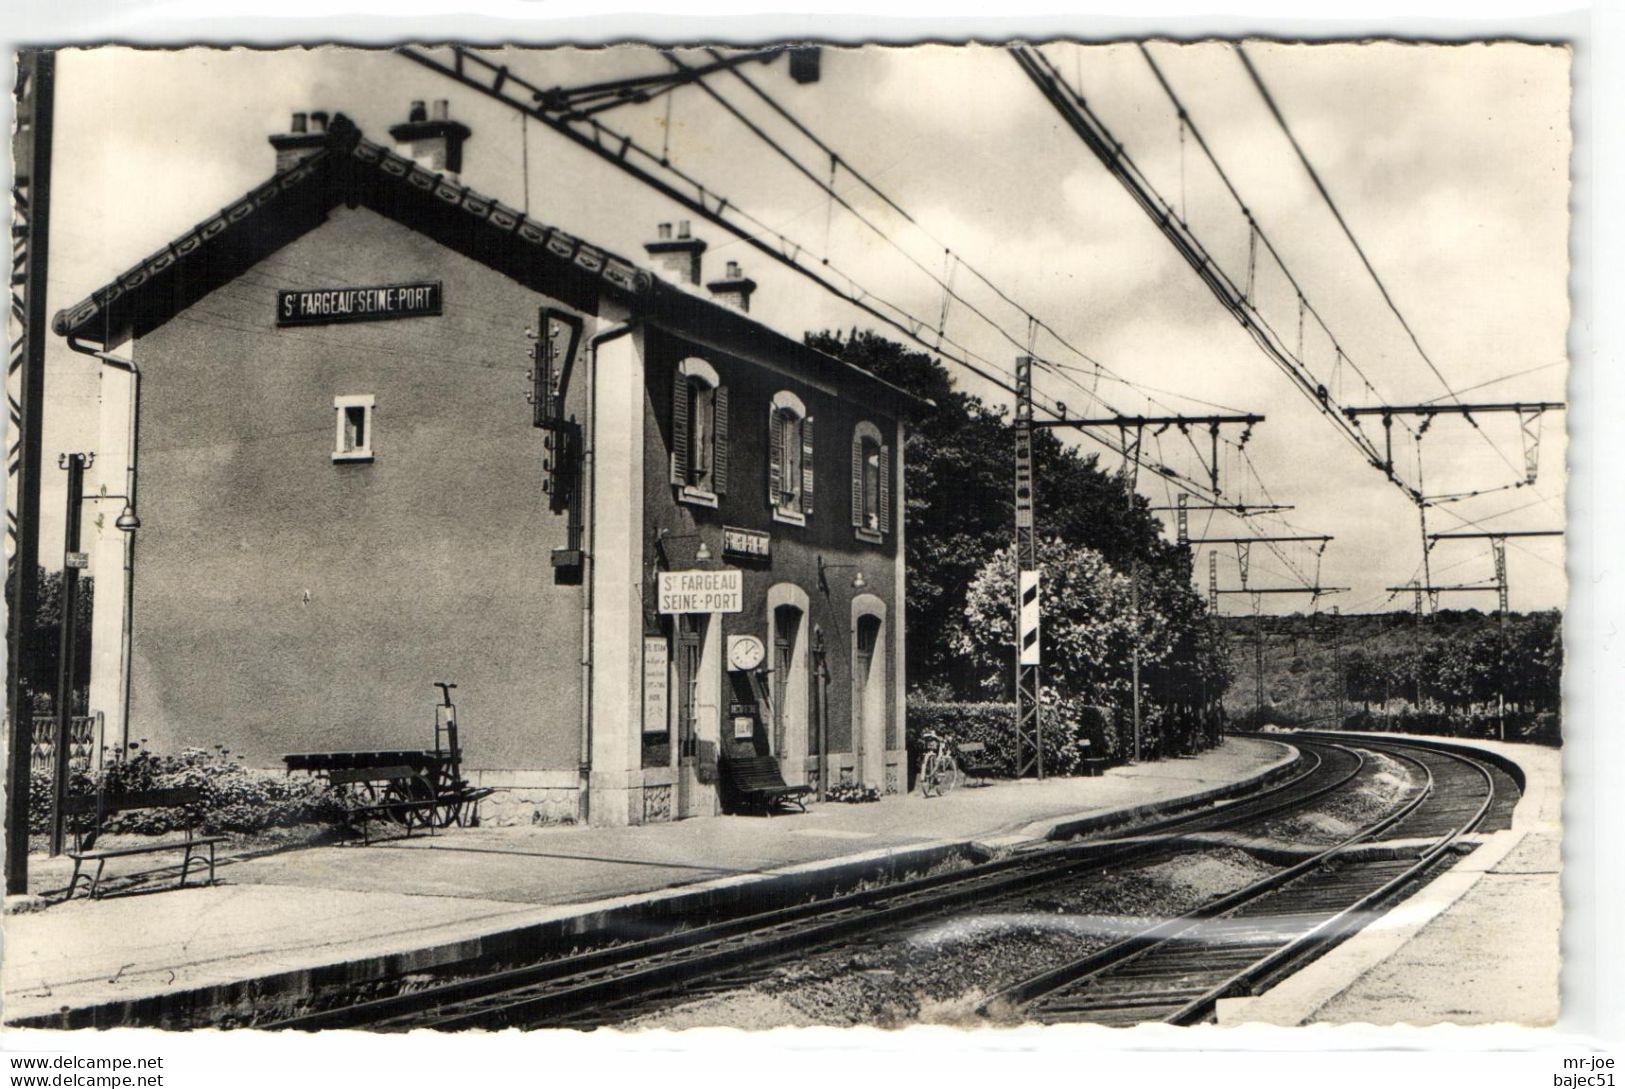 Saint Fargeau - La Gare - Saint Fargeau Ponthierry